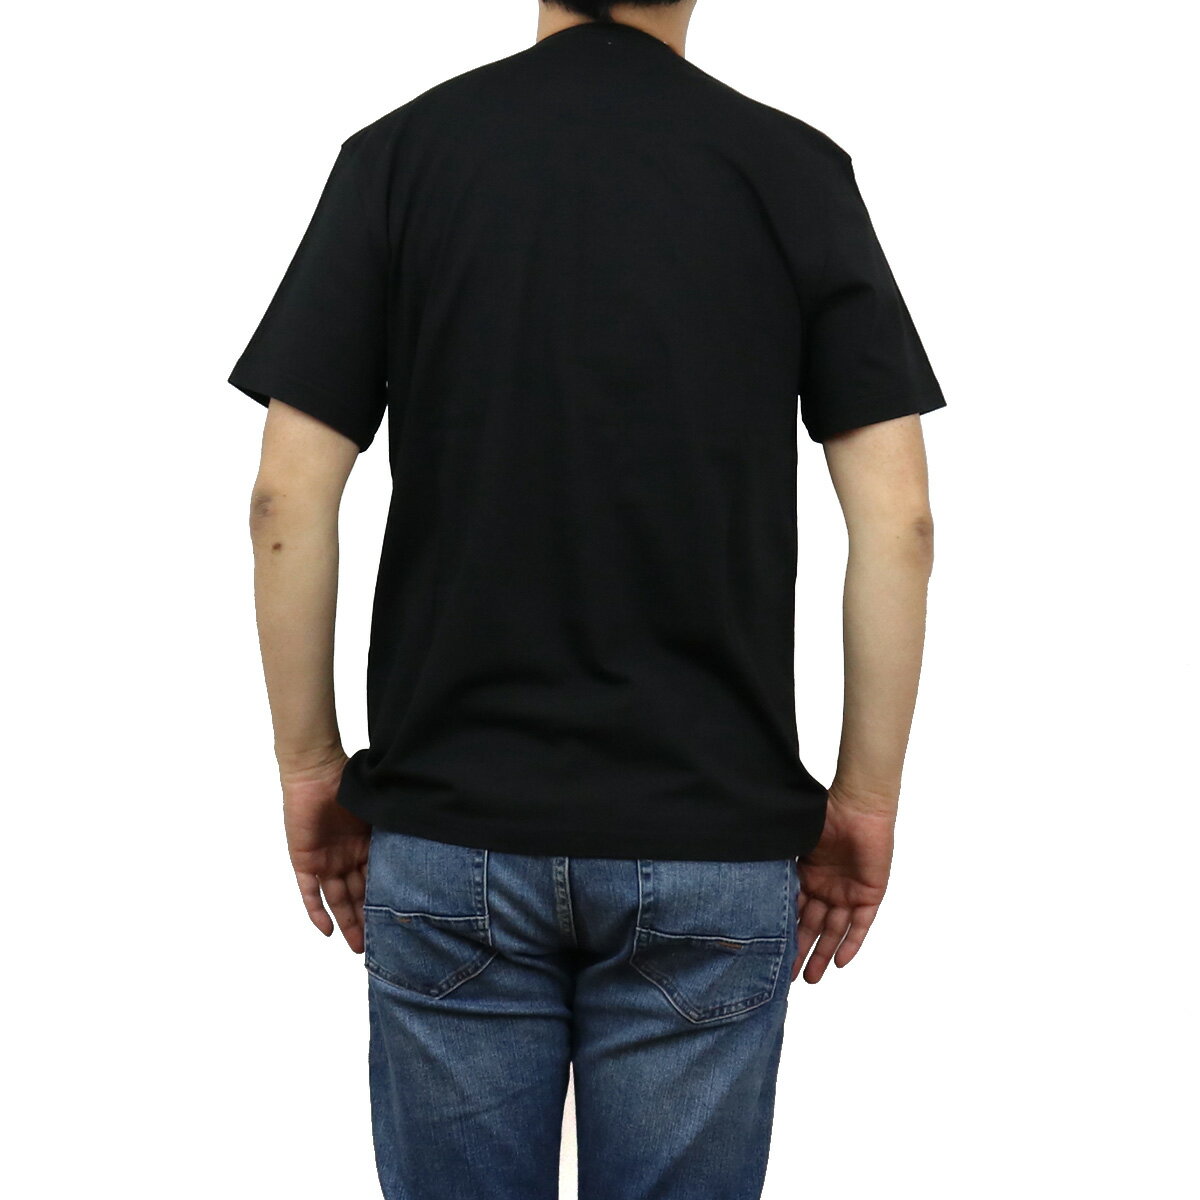 【夏SALE!!!】 ウールリッチ WOOLRICH メンズ−Tシャツ ブランドロゴ WOTE0048MR　UT1486　100 ブラック ts-01 apparel-01 FS-04